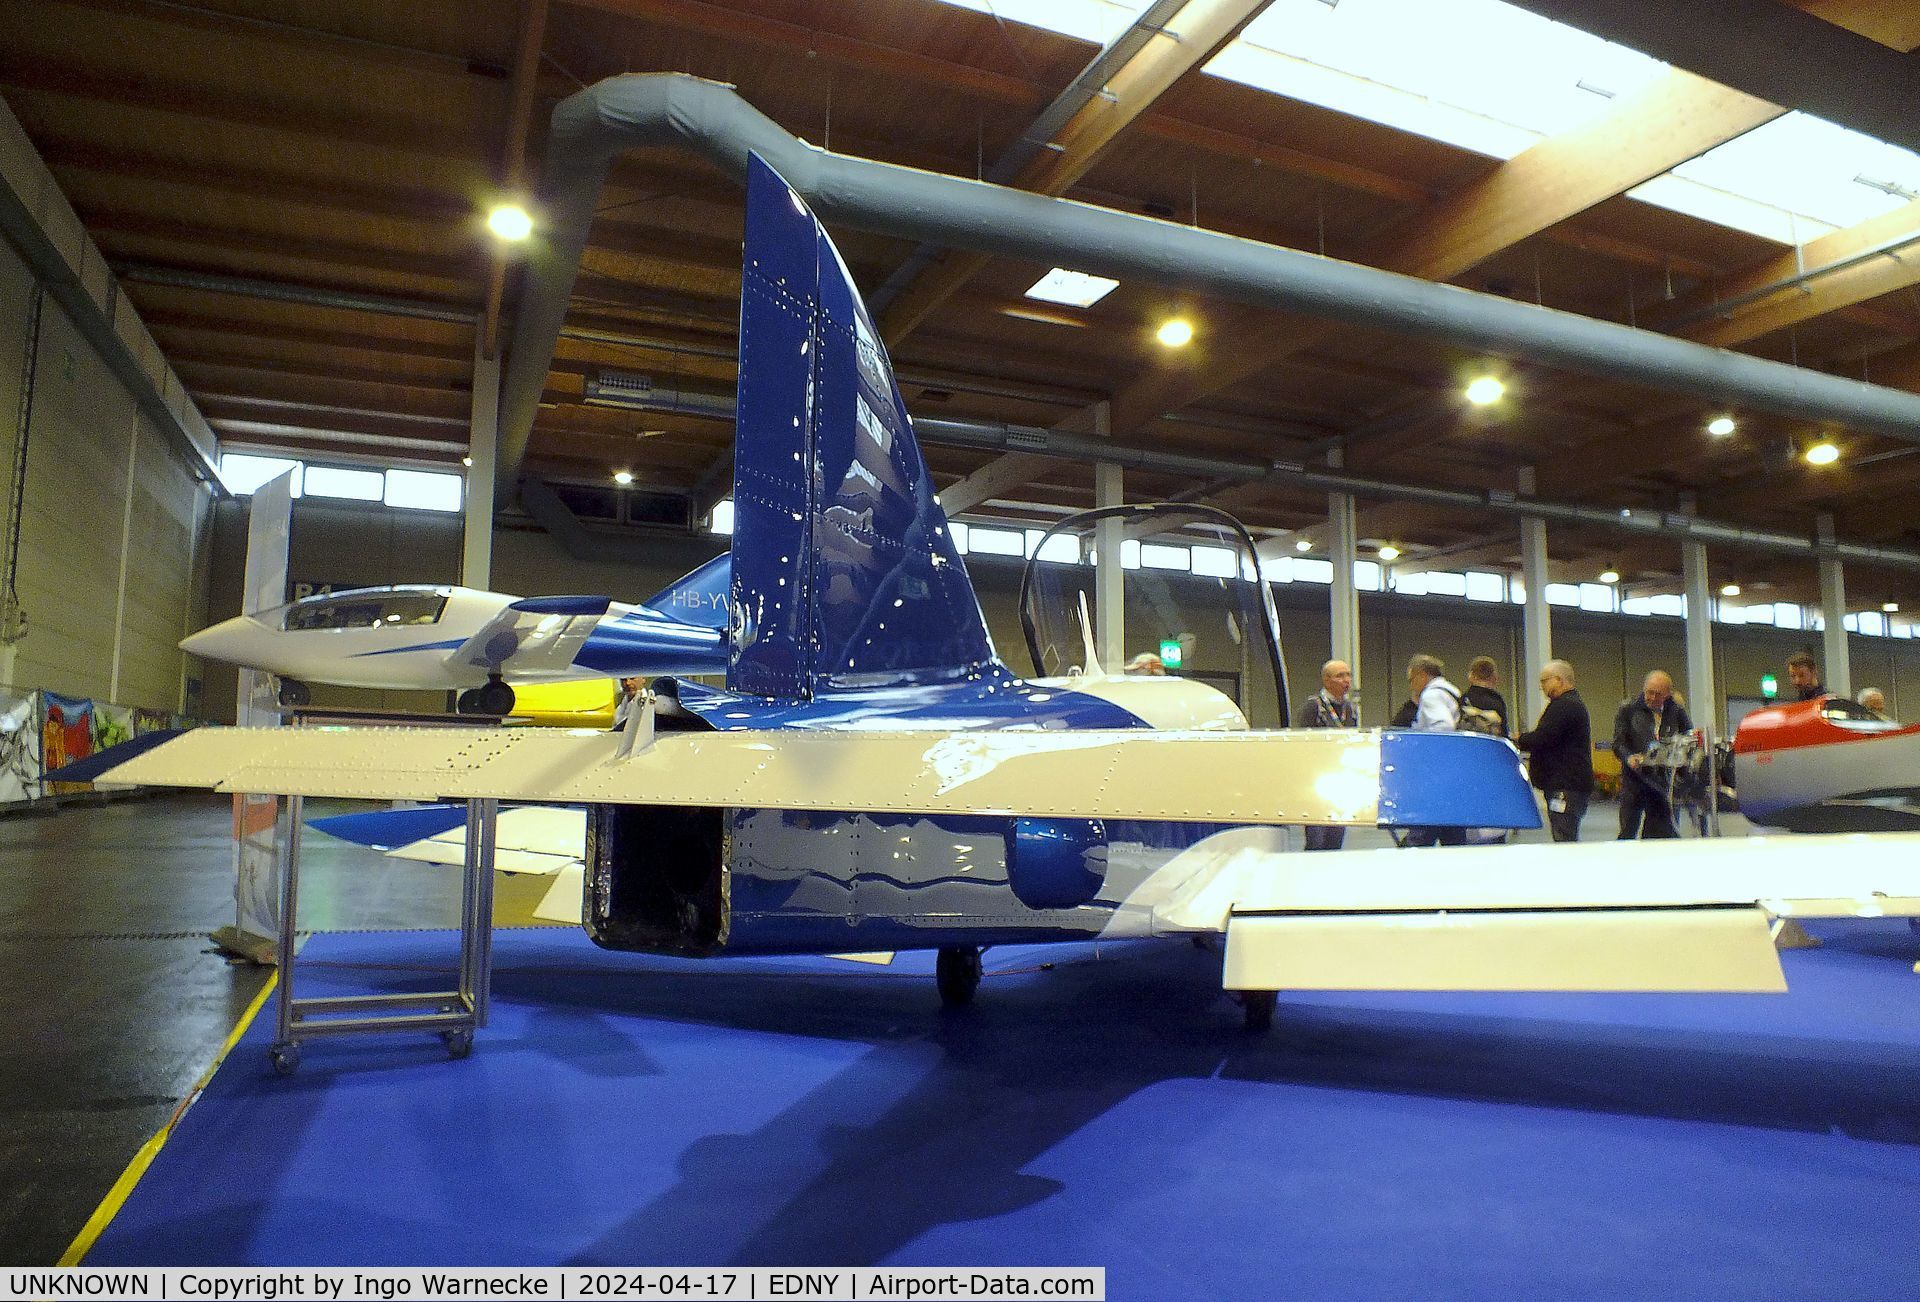 UNKNOWN, 2024 Villiger / Straub / Dünkli Traveller Jet Prototype C/N 01, Villiger / Straub / Dünkli Traveller Jet pre-prototype at the AERO 2024, Friedrichshafen